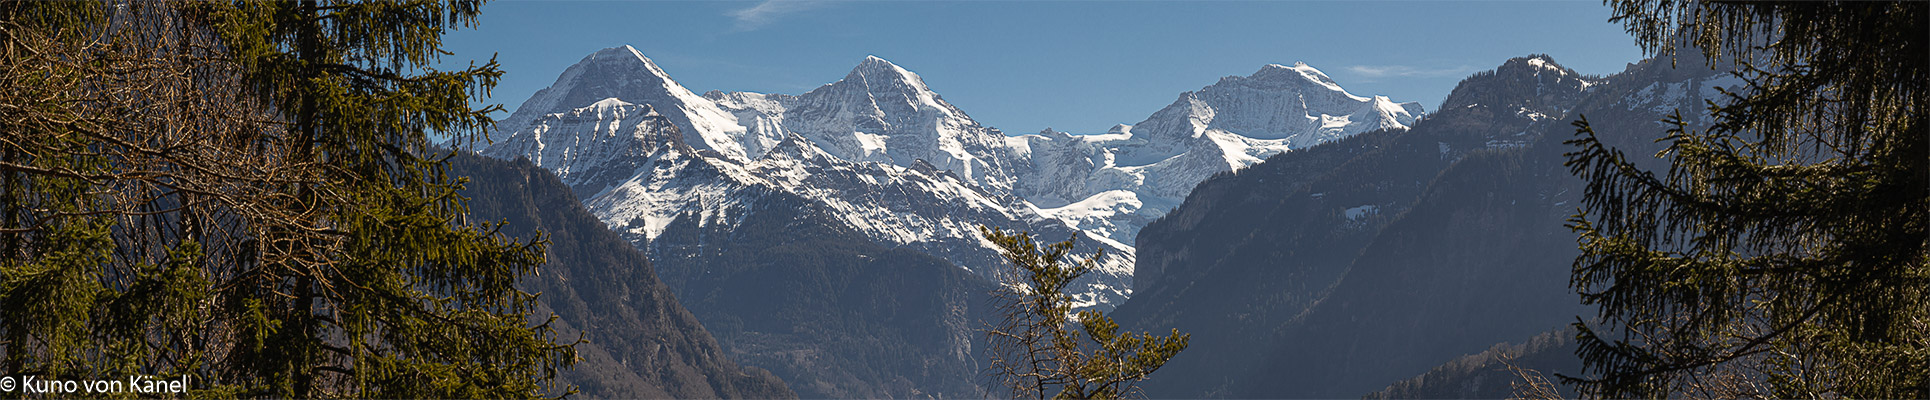 Panorama Eiger Mönch und Jungfrau